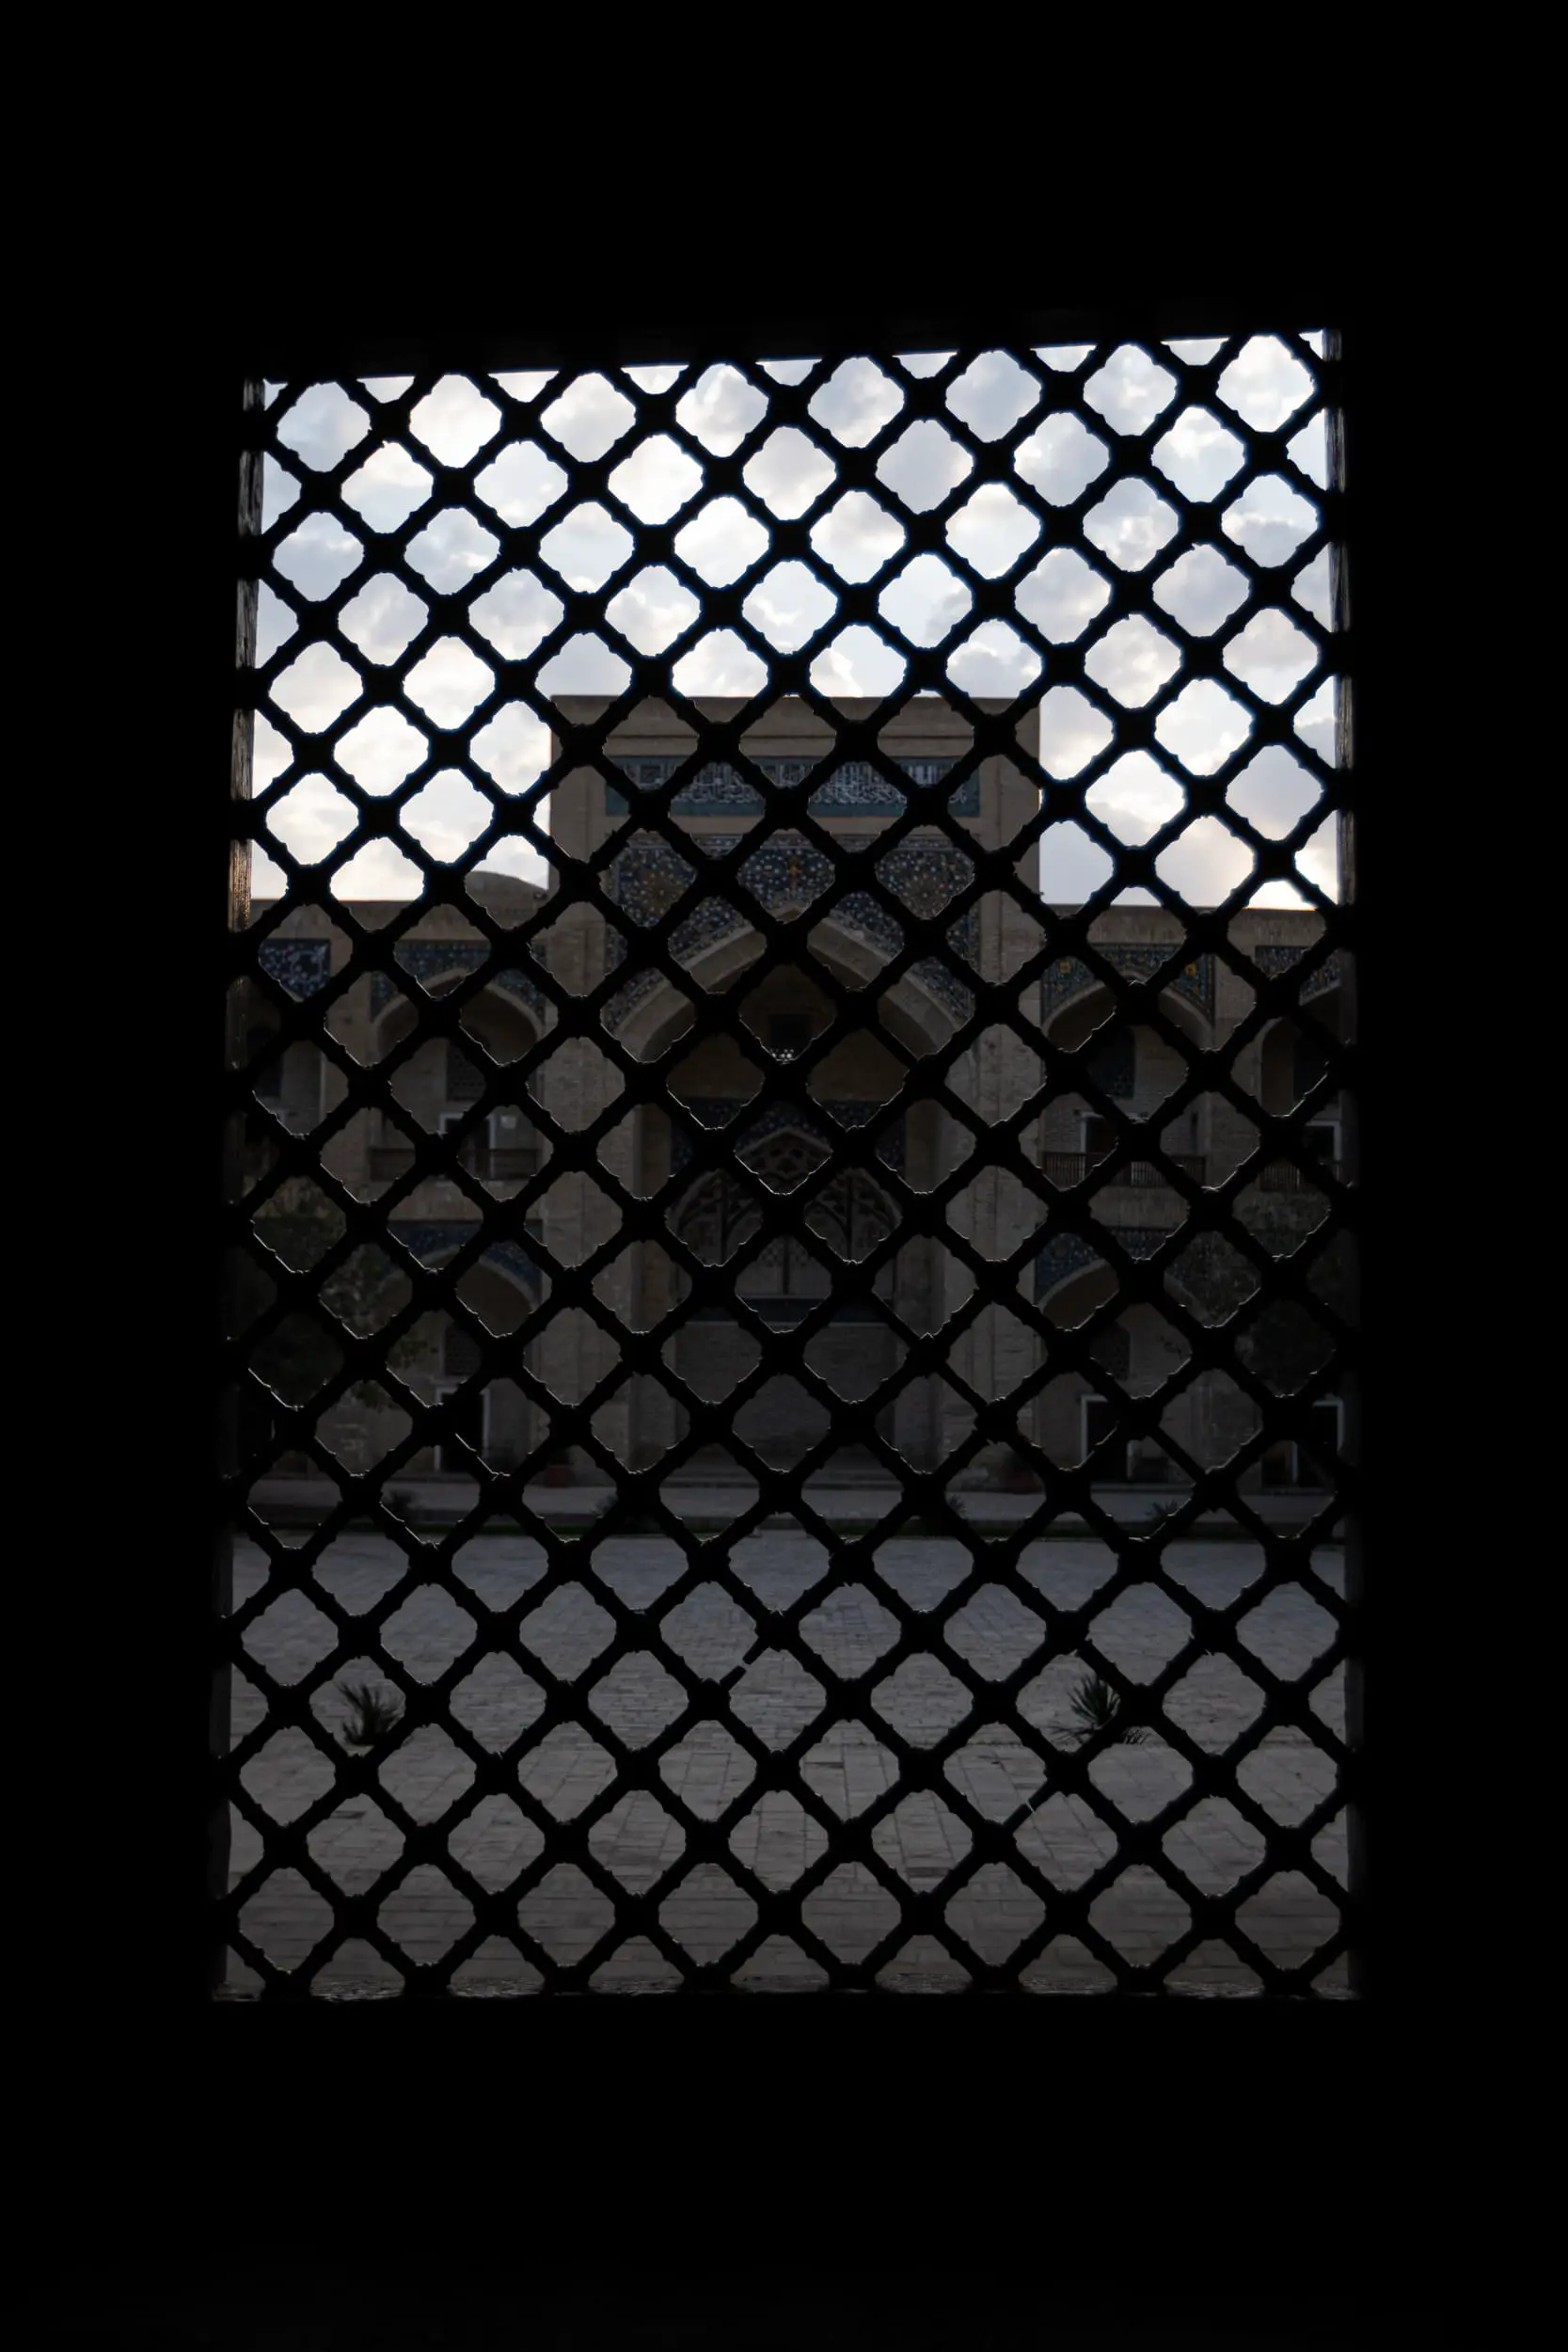 Bukhara Madrasa behind bars